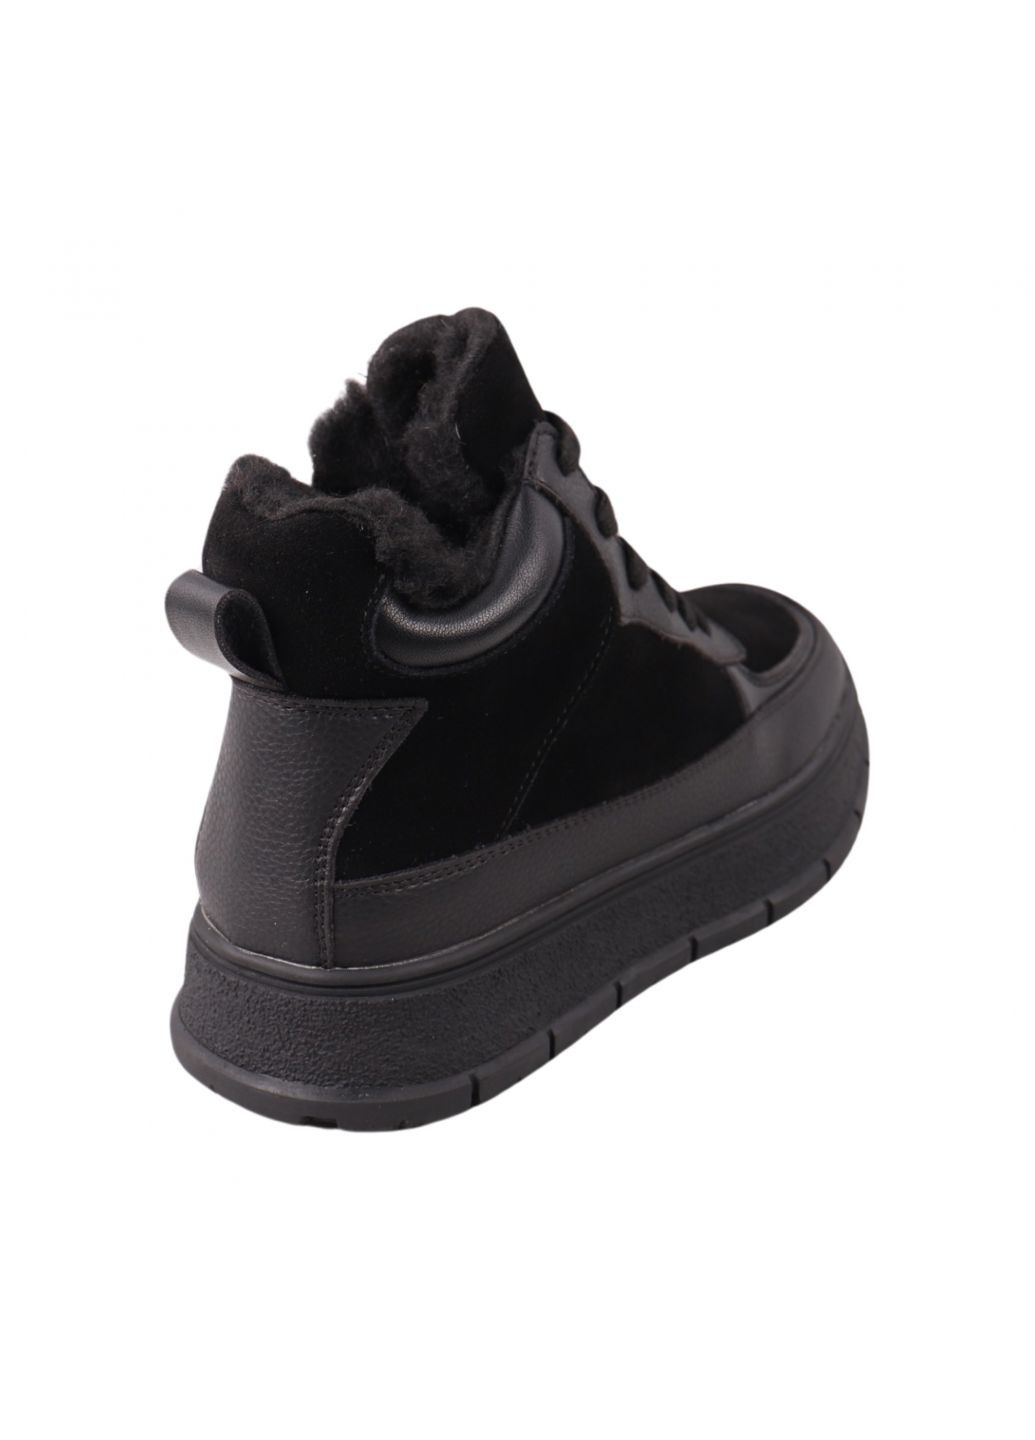 ботинки женские черные натуральная замша Gifanni